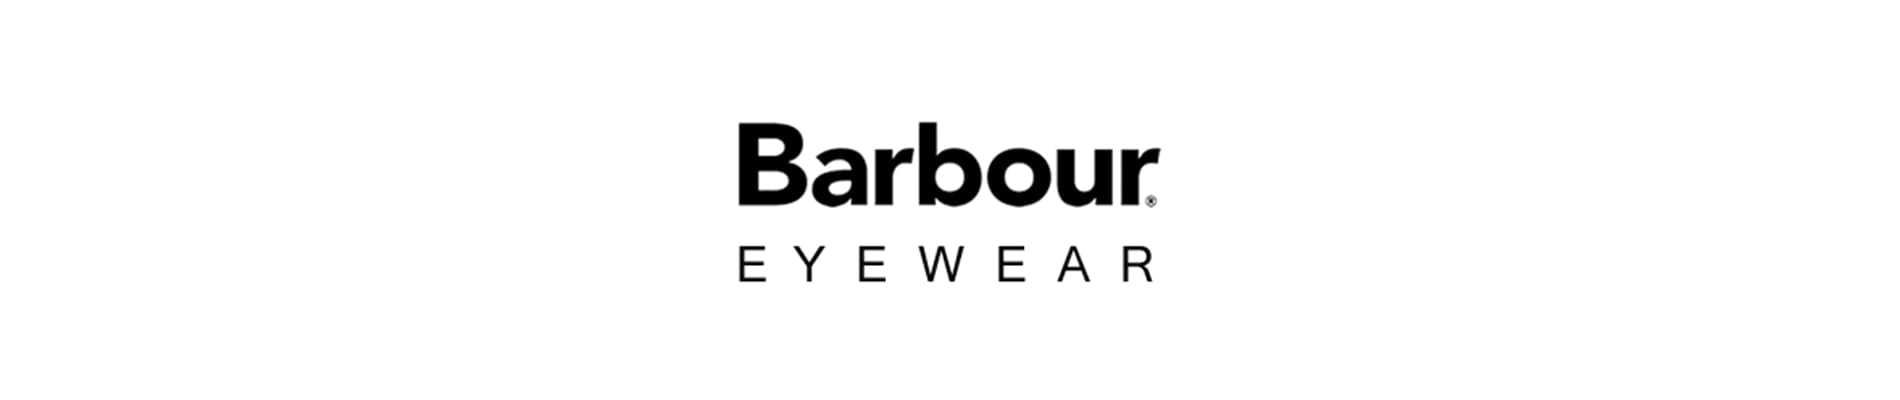 Barbour eyewear designer frames header